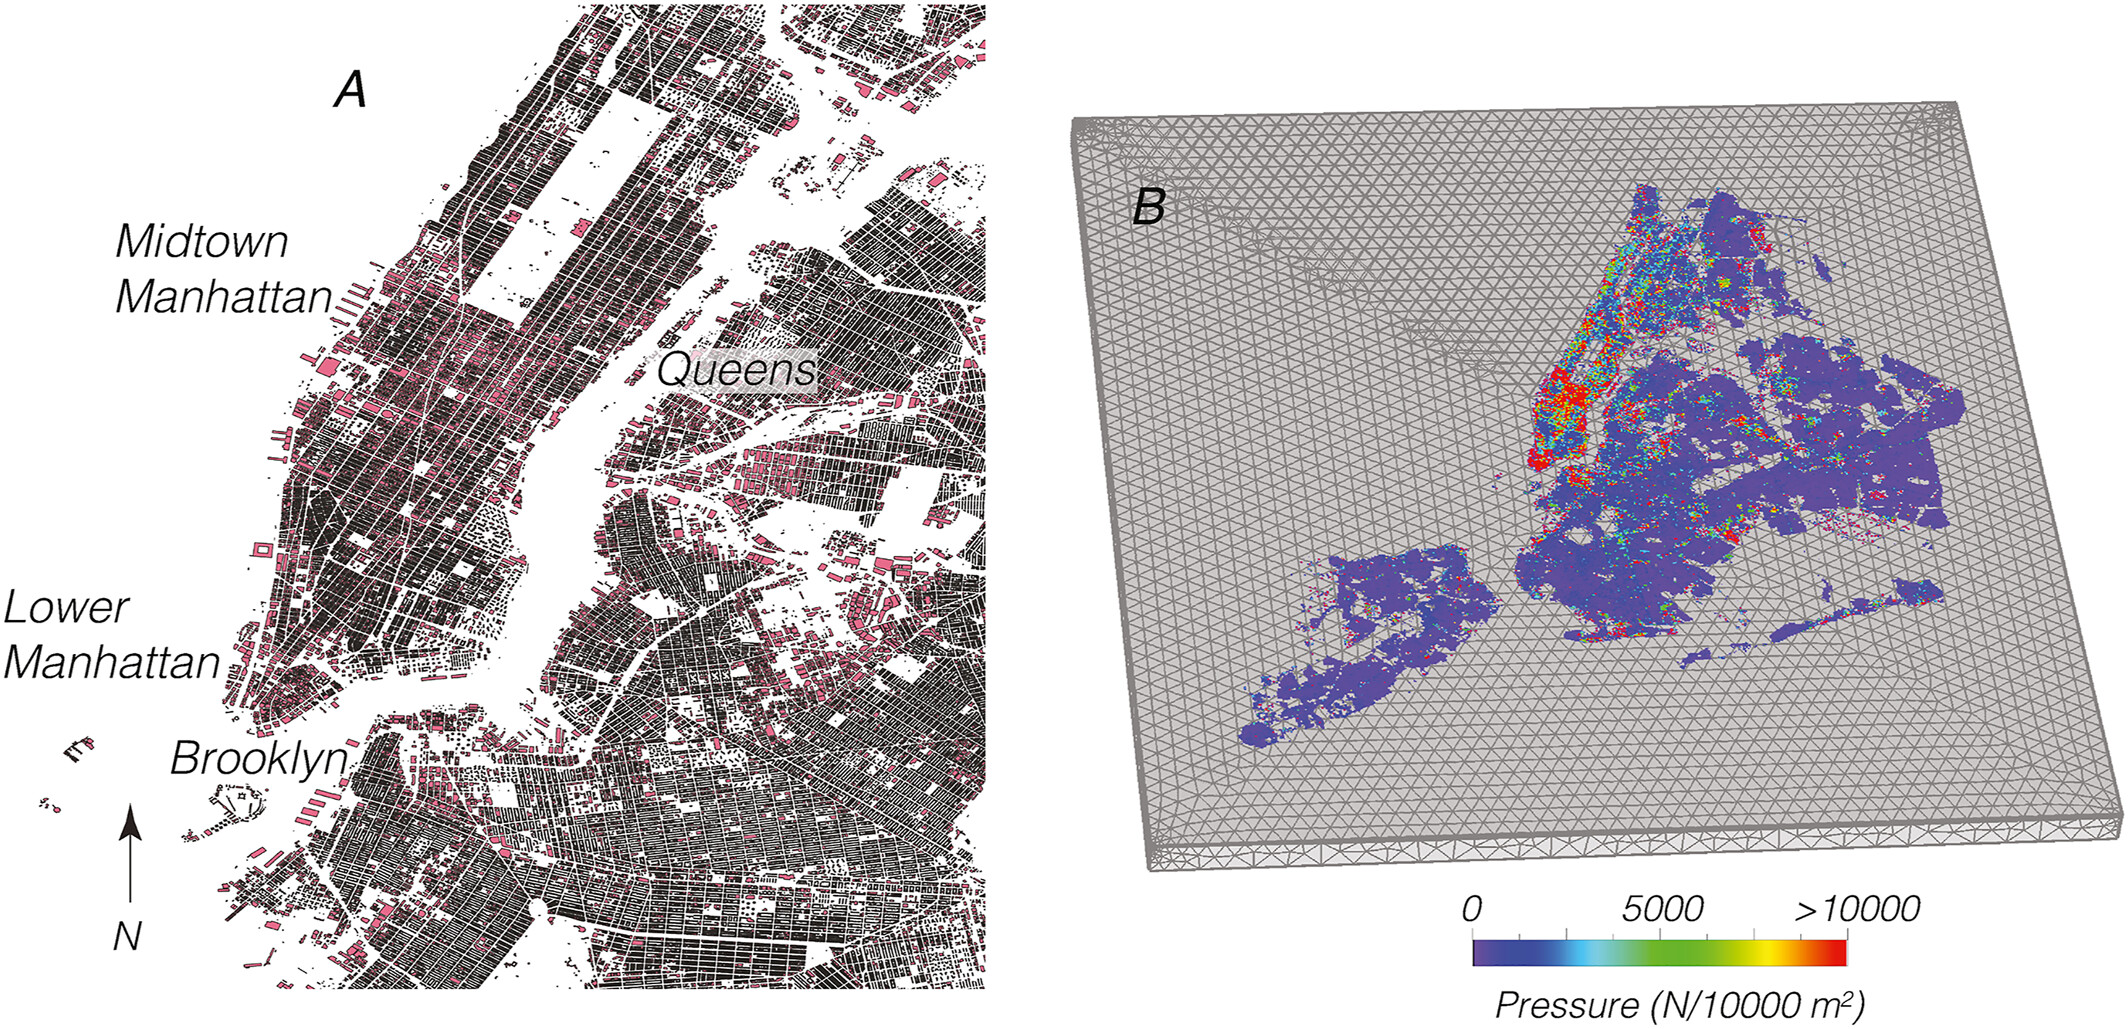 Časti New Yorku, zobrazujúce Manhattan, Queens a Brooklyn. Základné obrysy a údaje o výške sa použili na výpočet celkových hmotností budov. 